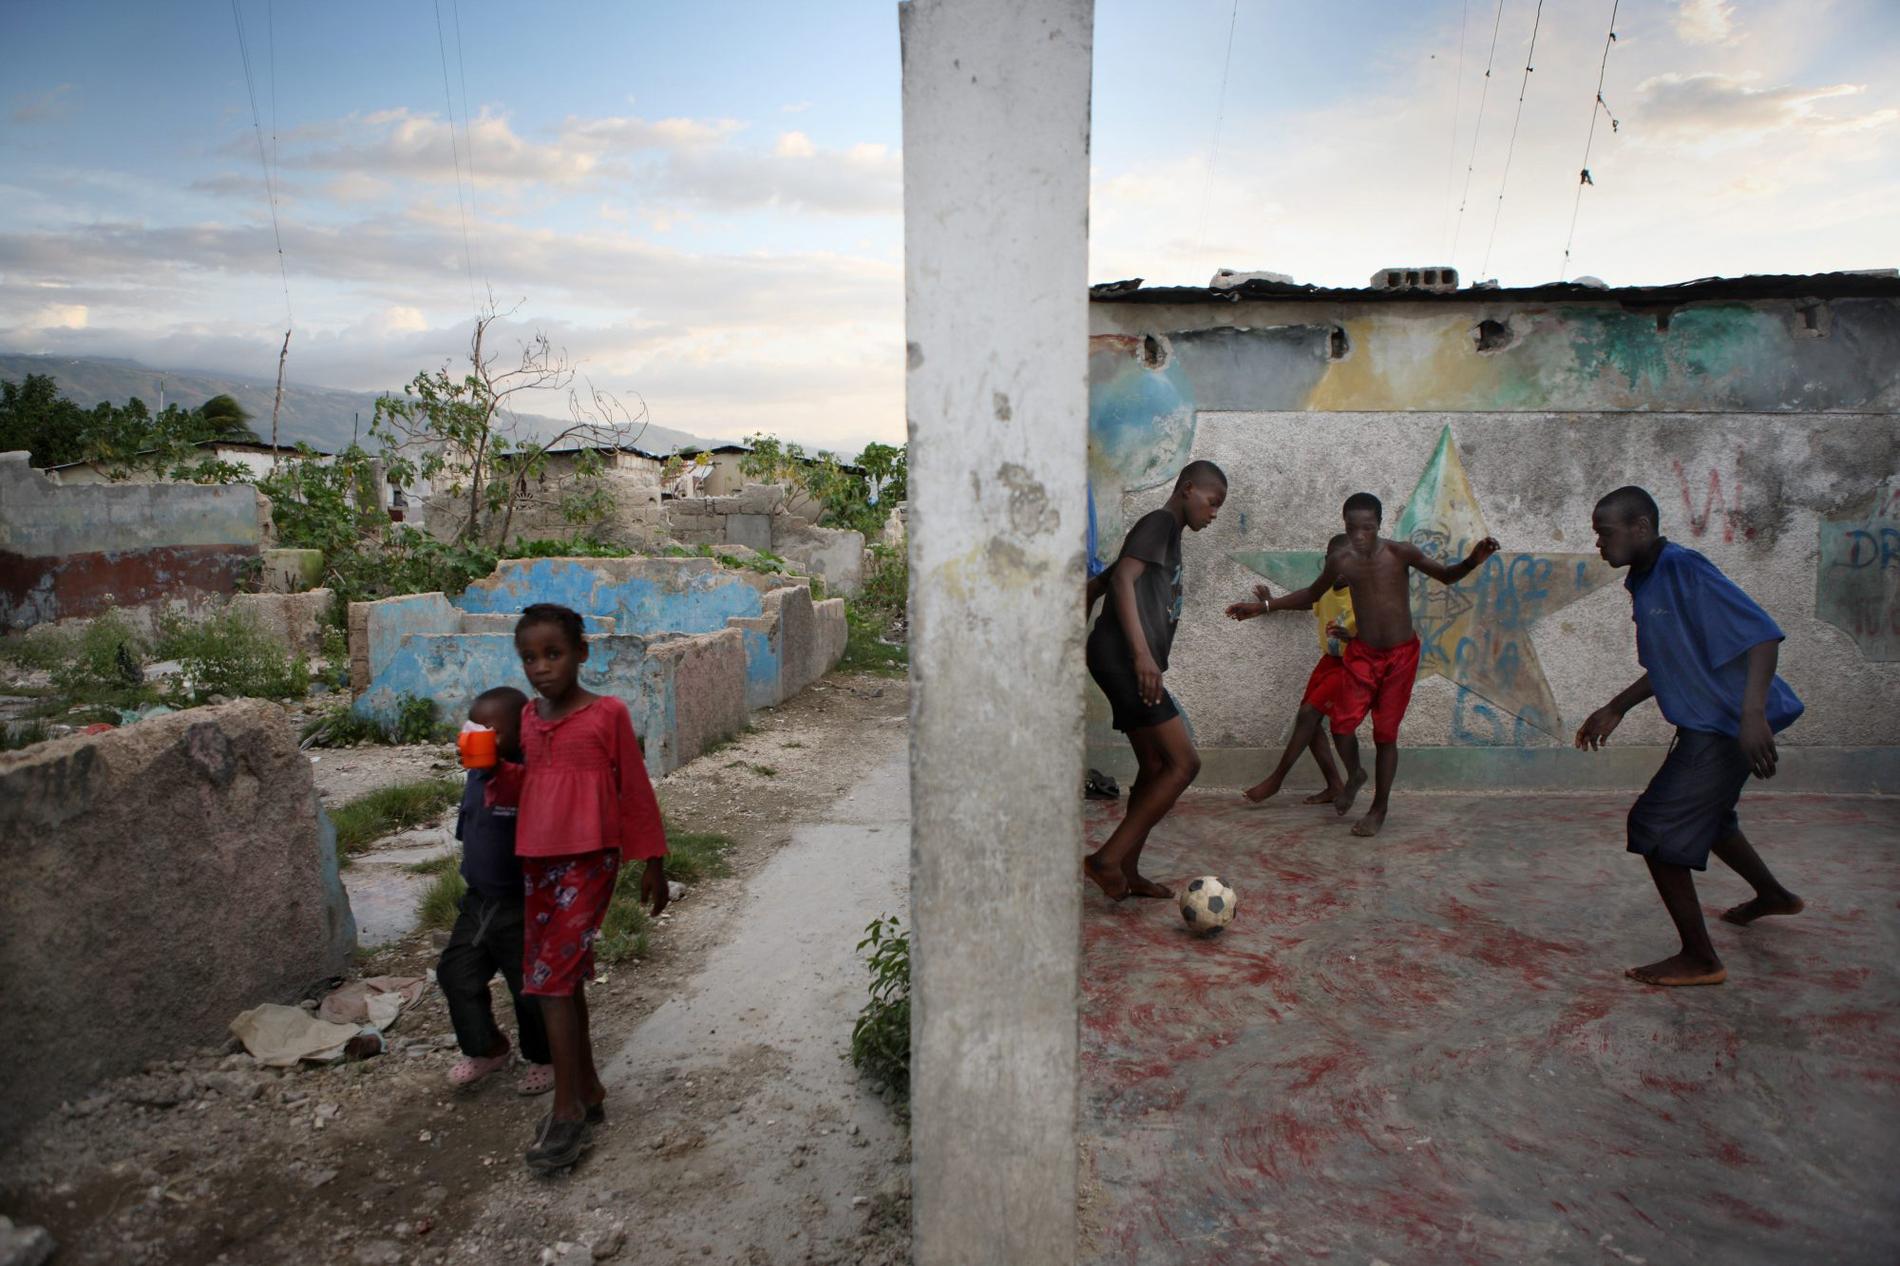 ”Inget finns kvar” Huset där Madeleine bodde med sina föräldrar är borta. På betongplattan har en flyktingfamilj slagit upp sina tält. ”Det finns inget kvar här”, säger hon.